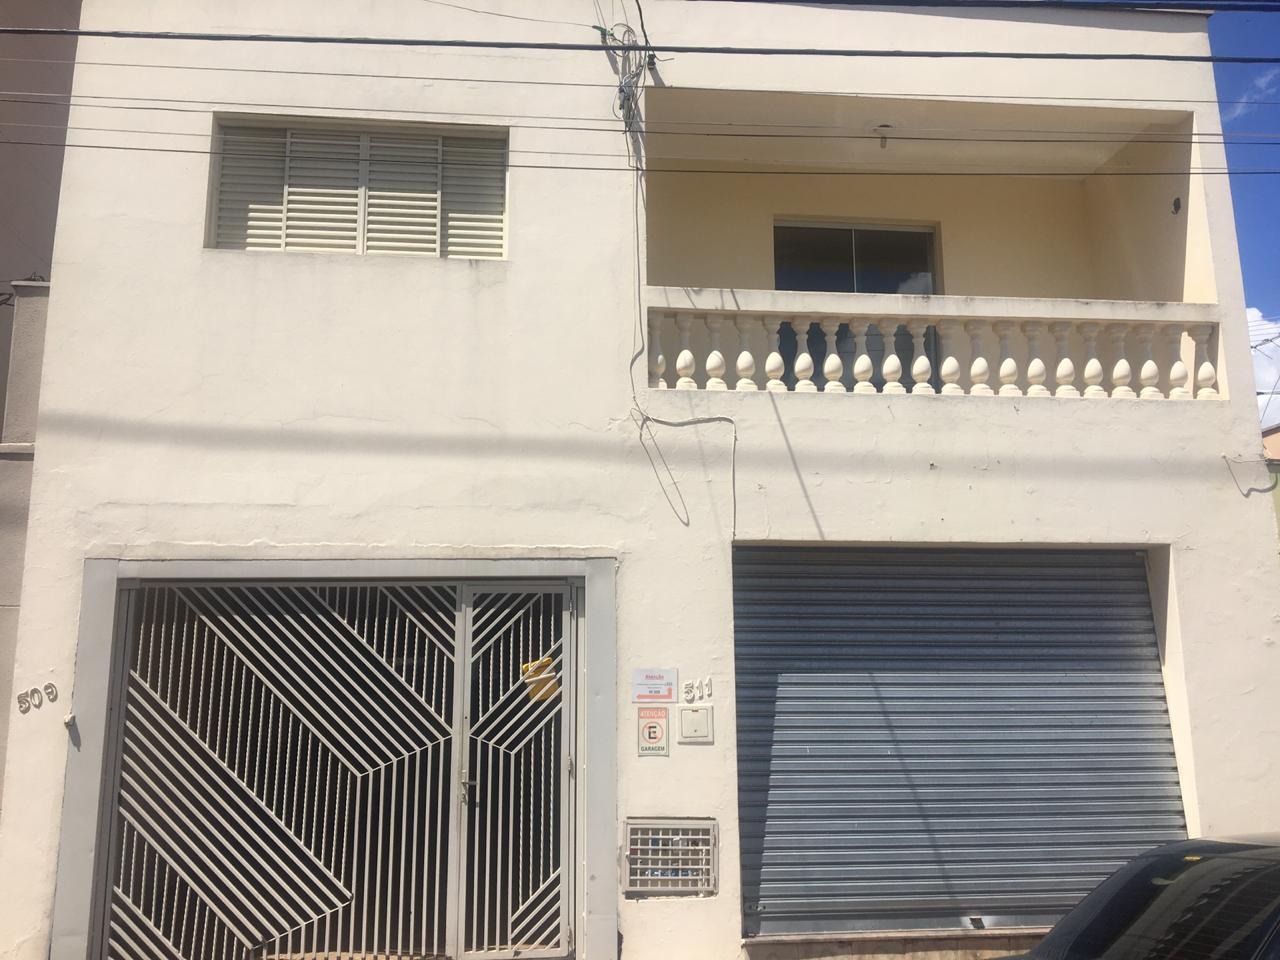 Casa para comprar, 4 quartos, 2 suítes, 1 vaga, no bairro São Dimas em Piracicaba - SP